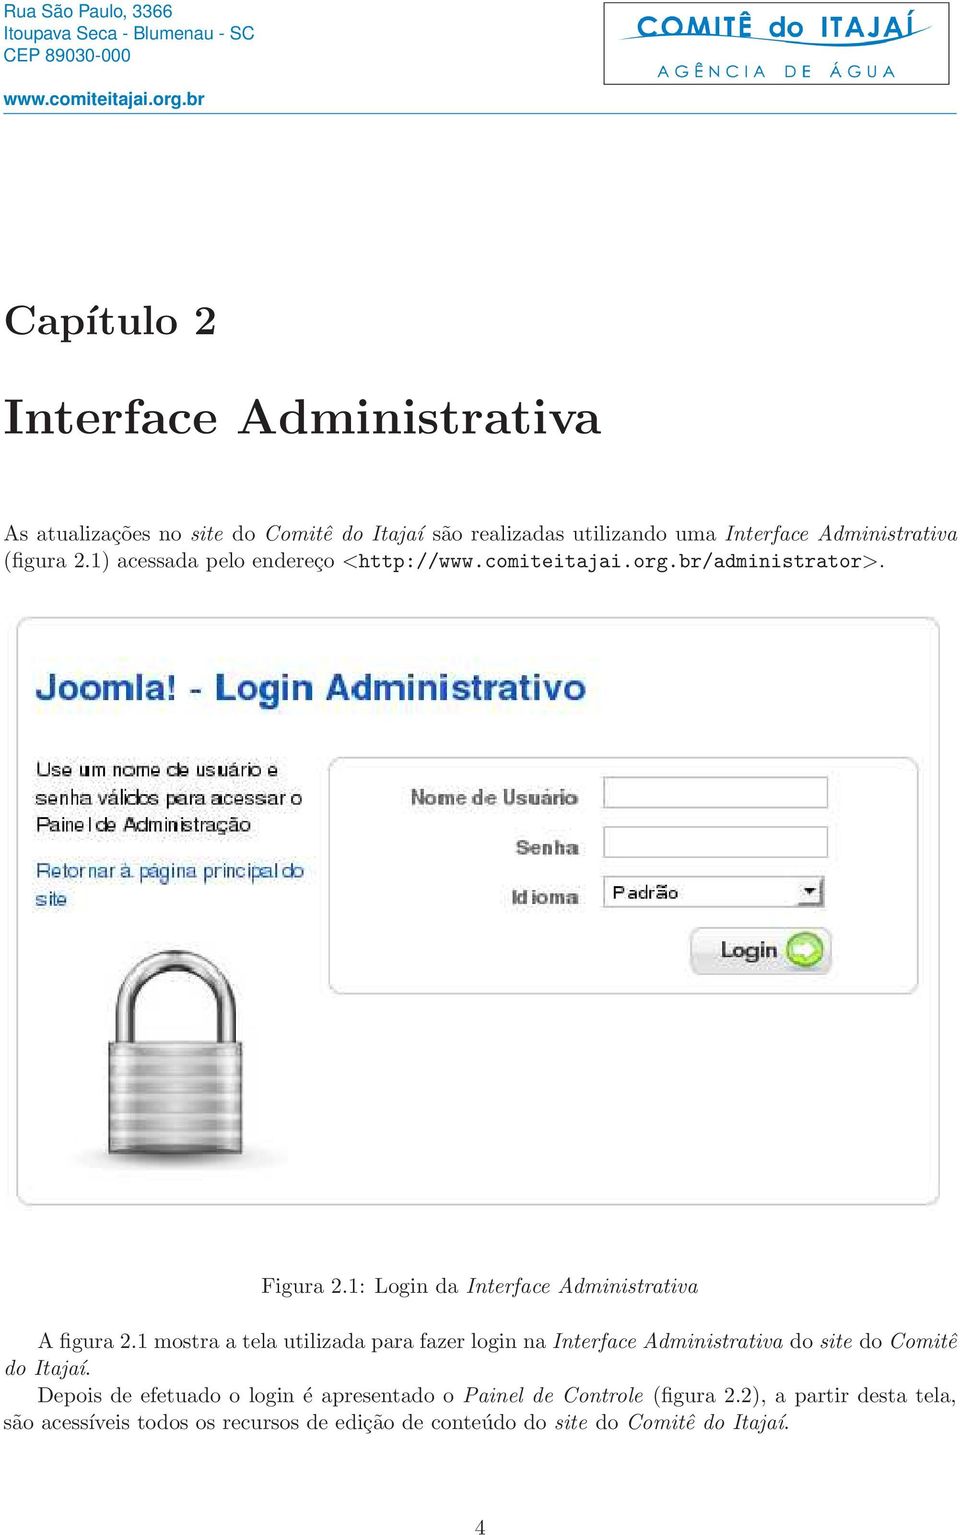 1 mostra a tela utilizada para fazer login na Interface Administrativa do site do Comitê do Itajaí.